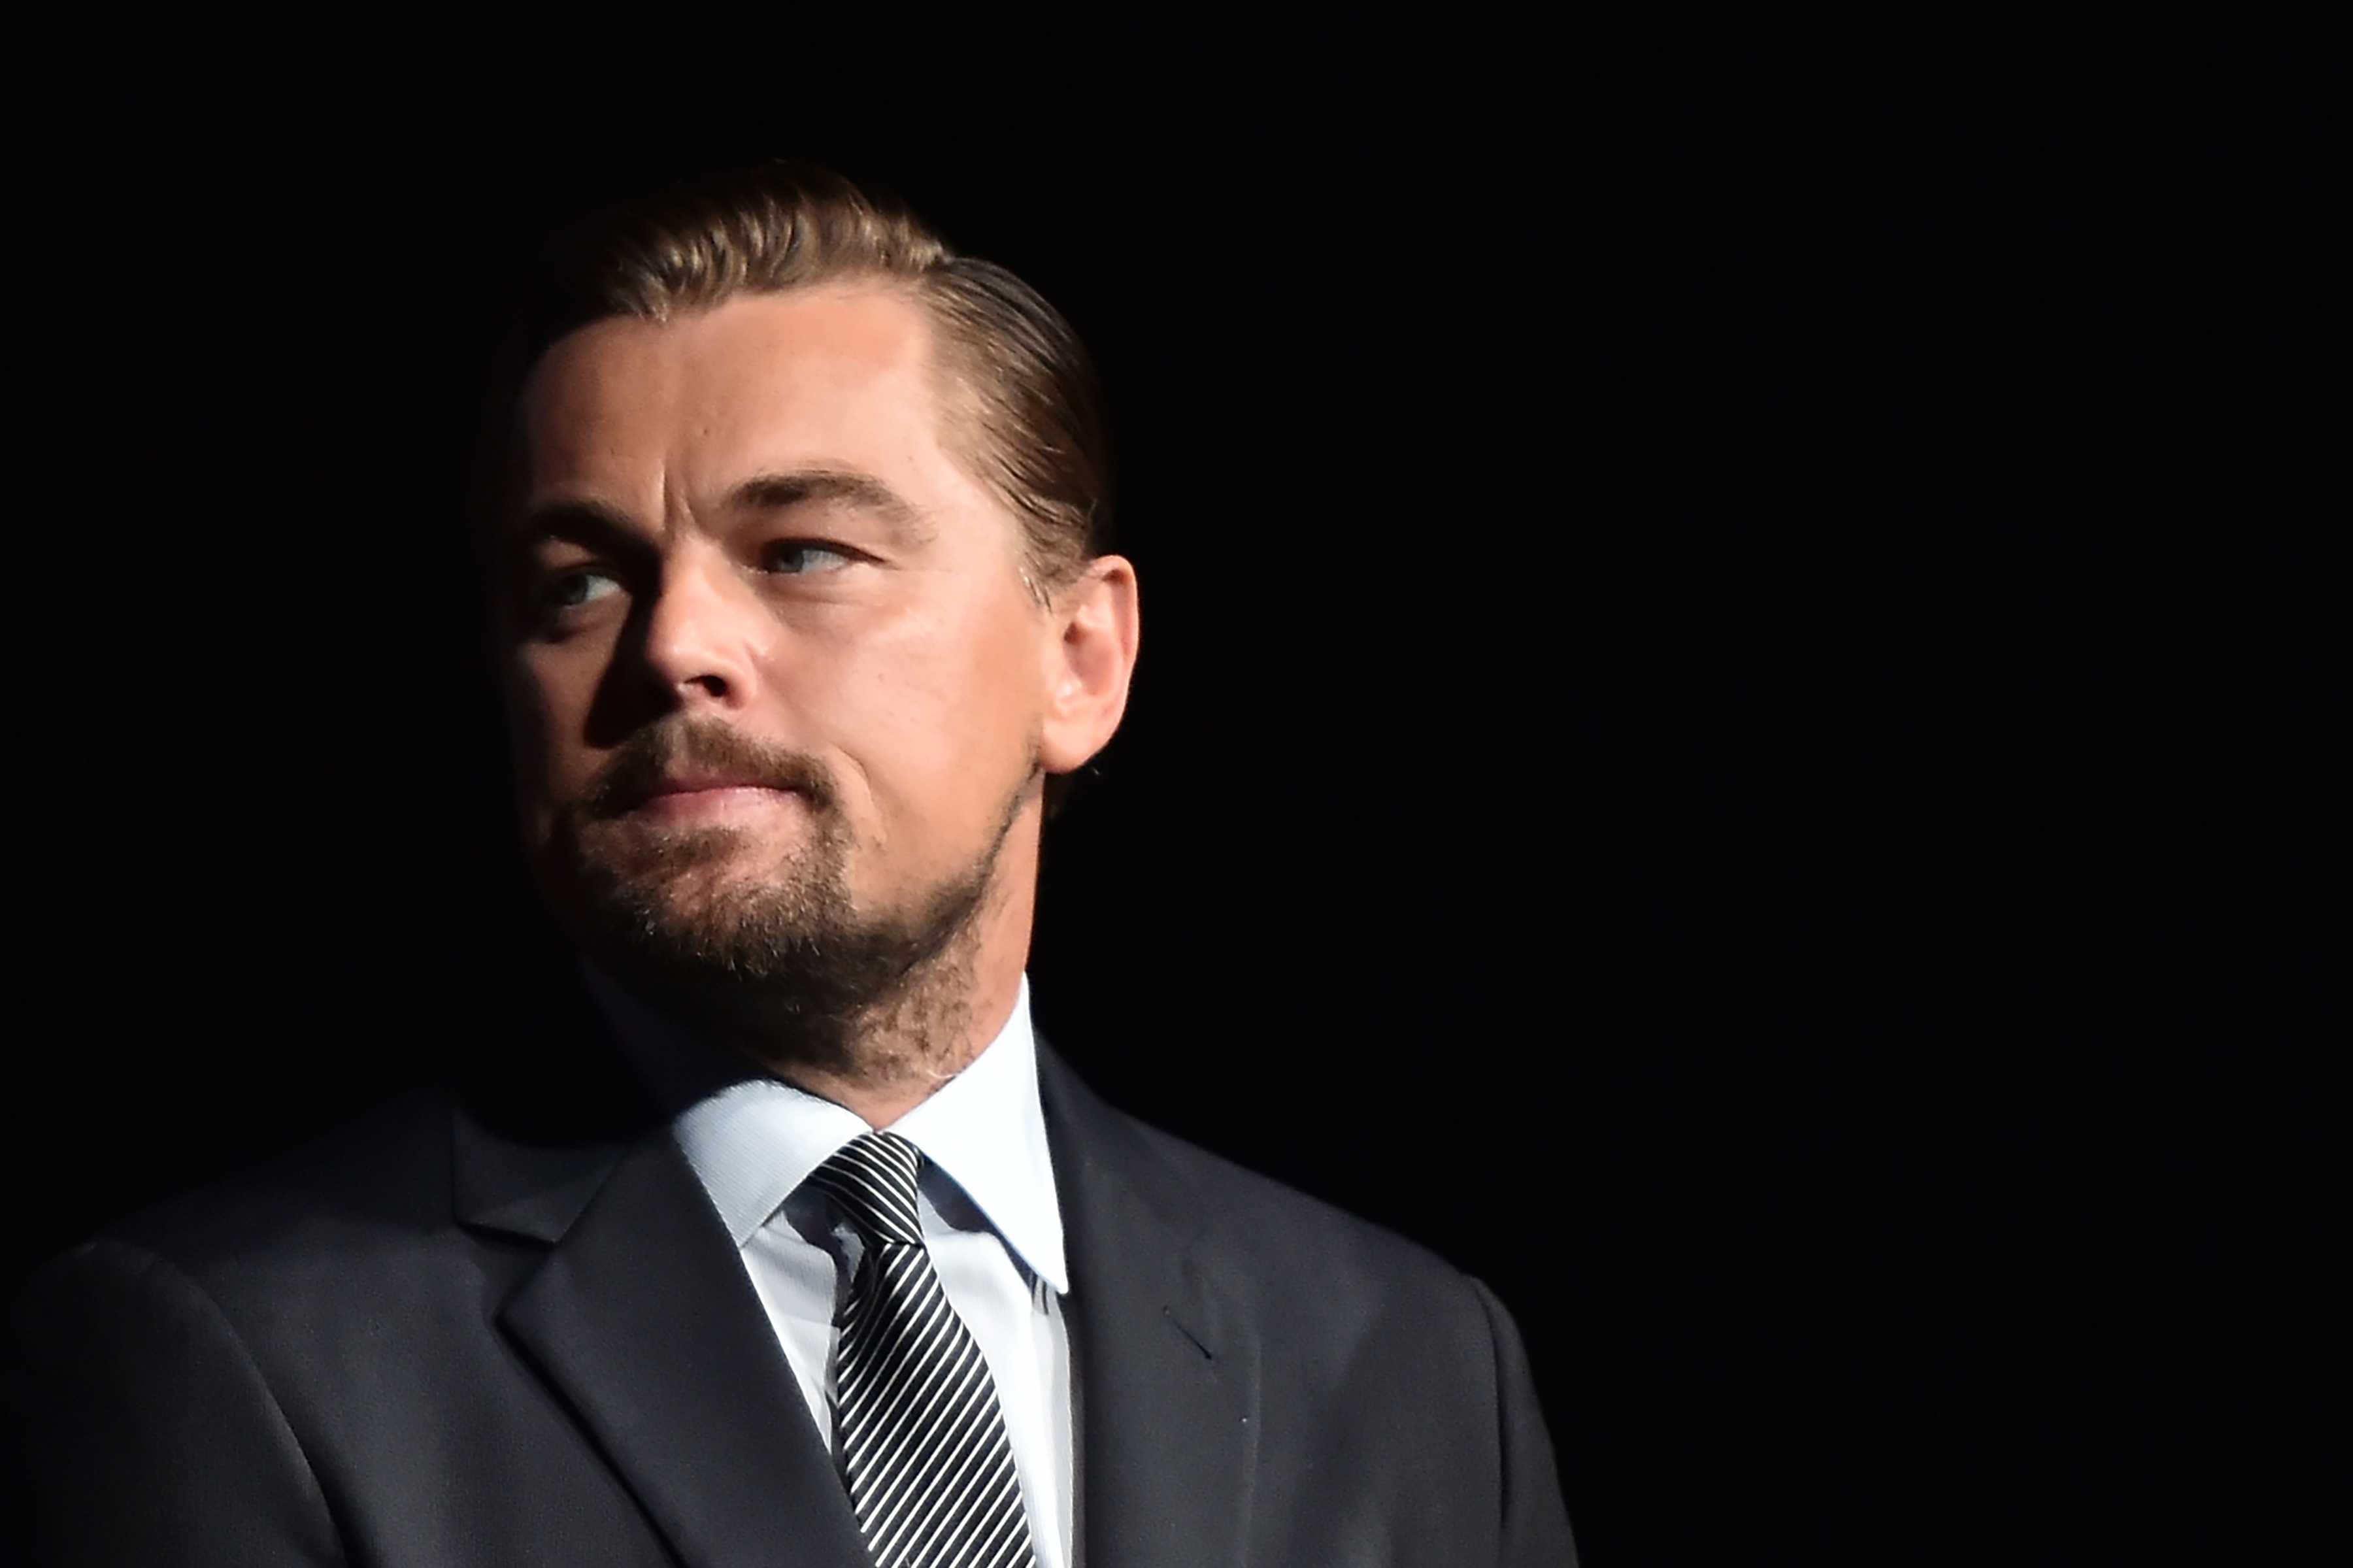 Leonardo DiCaprio entrega a justicia de EE.UU. regalos recibidos del fondo estatal malasio 1MDB